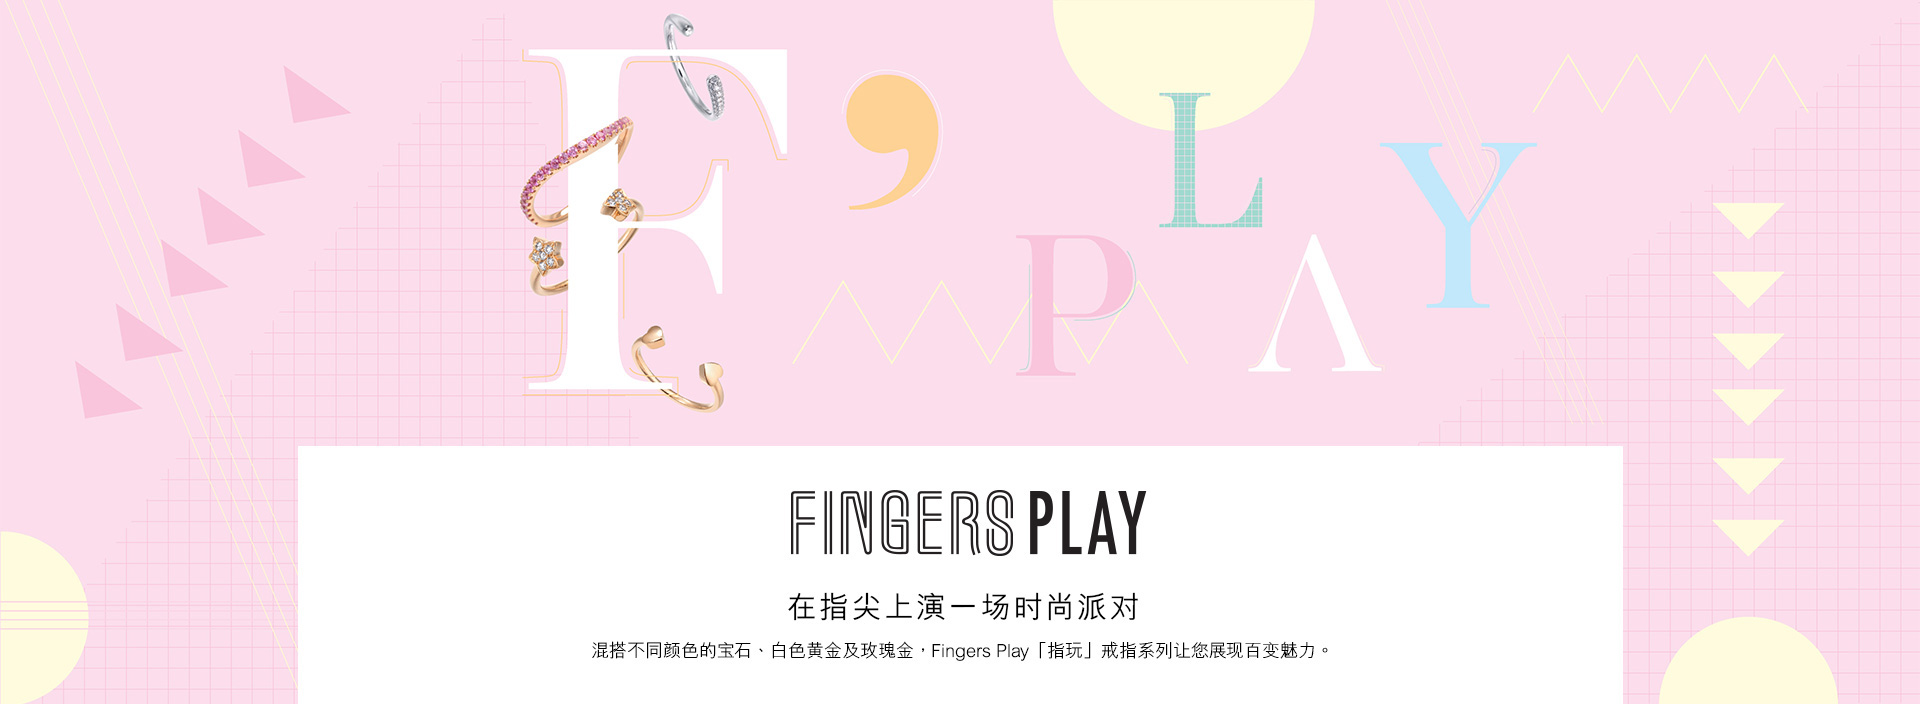 fingersplay專頁-1920PC_01.jpg